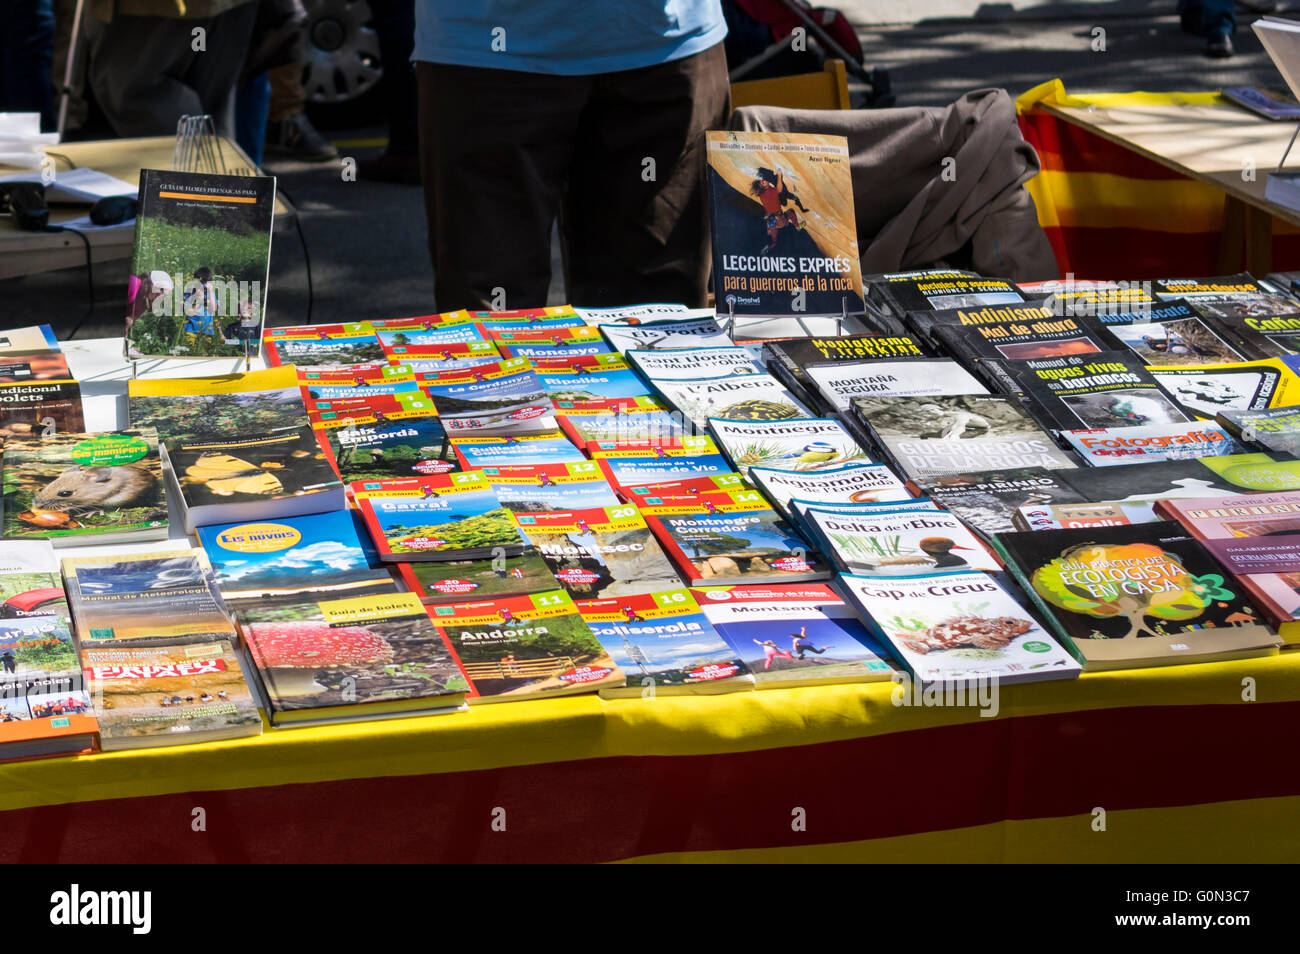 Les livres en vente à l'extérieur sur un stand Diada de Sant Jordi (Saint George's day), le 23 avril, à Barcelone, en Catalogne. Banque D'Images